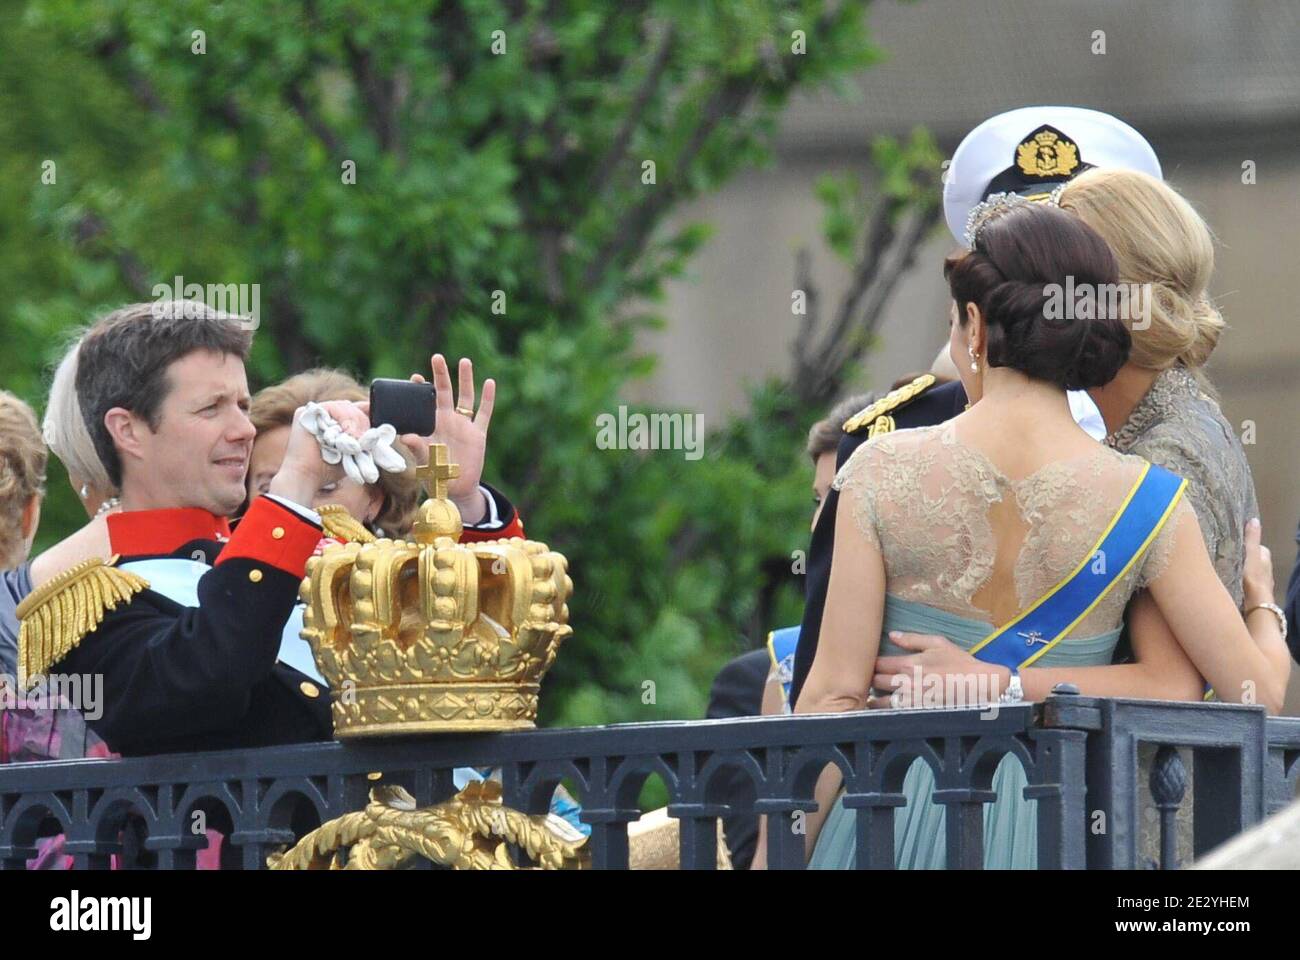 crown-prince-frederik-of-denmark-crown-prince-willem-alexander-of-the-netherlands-crown-princess-mary-of-denmark-princess-maxima-of-the-netherlands-and-crown-princess-mette-marit-of-norway-attending-royal-palace-during-the-ceremony-of-the-wedding-of-crown-princess-victoria-of-sweden-and-daniel-westling-in-stockholm-sweden-on-june-19-2010-photo-by-mousse-nebinger-orbanabacapresscom-2E2YHEM.jpg